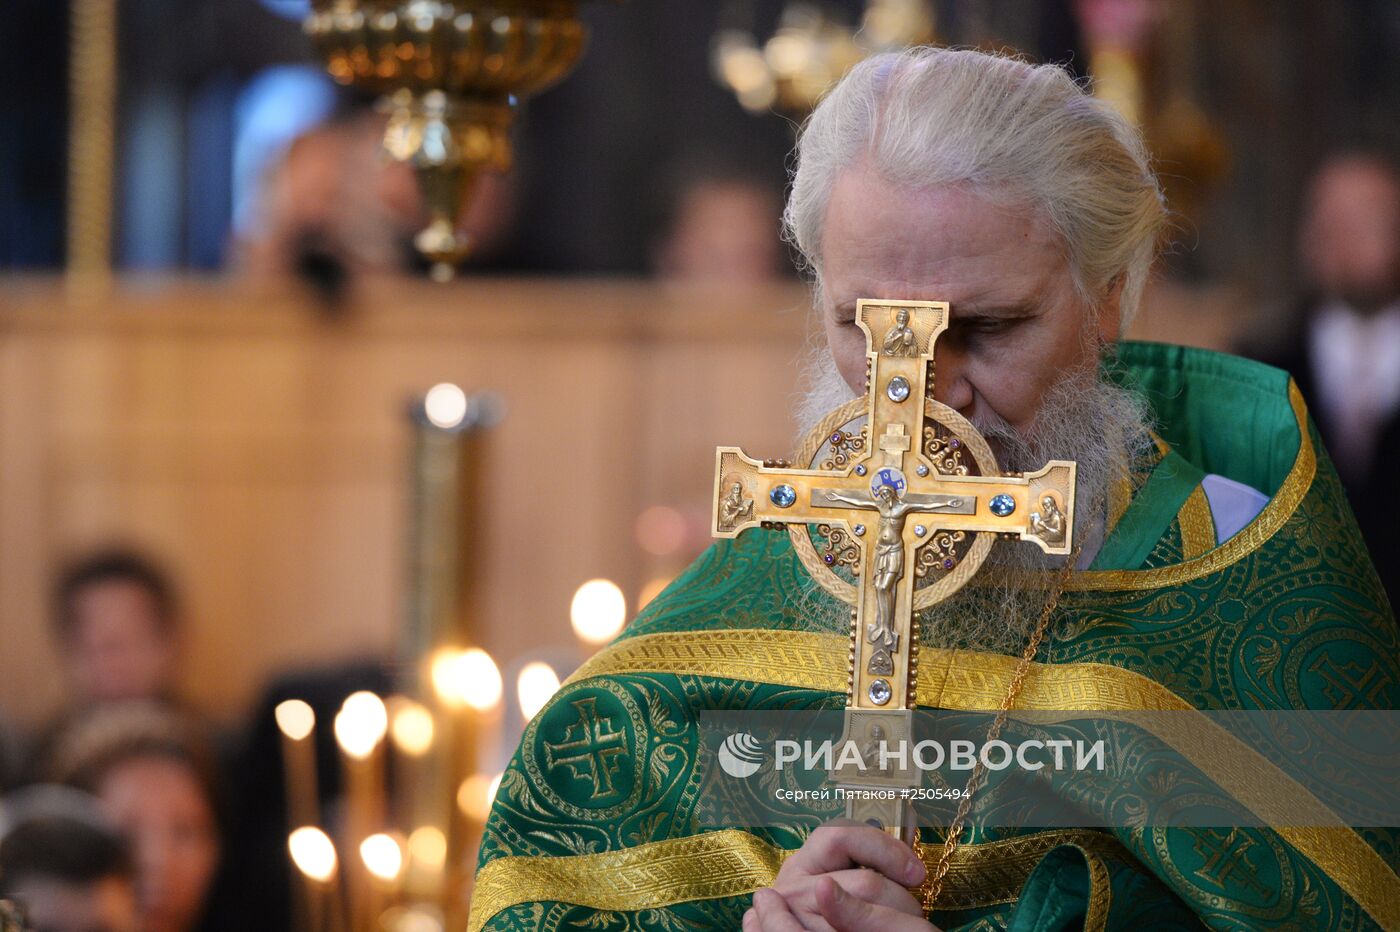 Открытие собрания игумений в Троице-Сергиевой лавре в рамках празднования 700-летия Сергия Радонежского